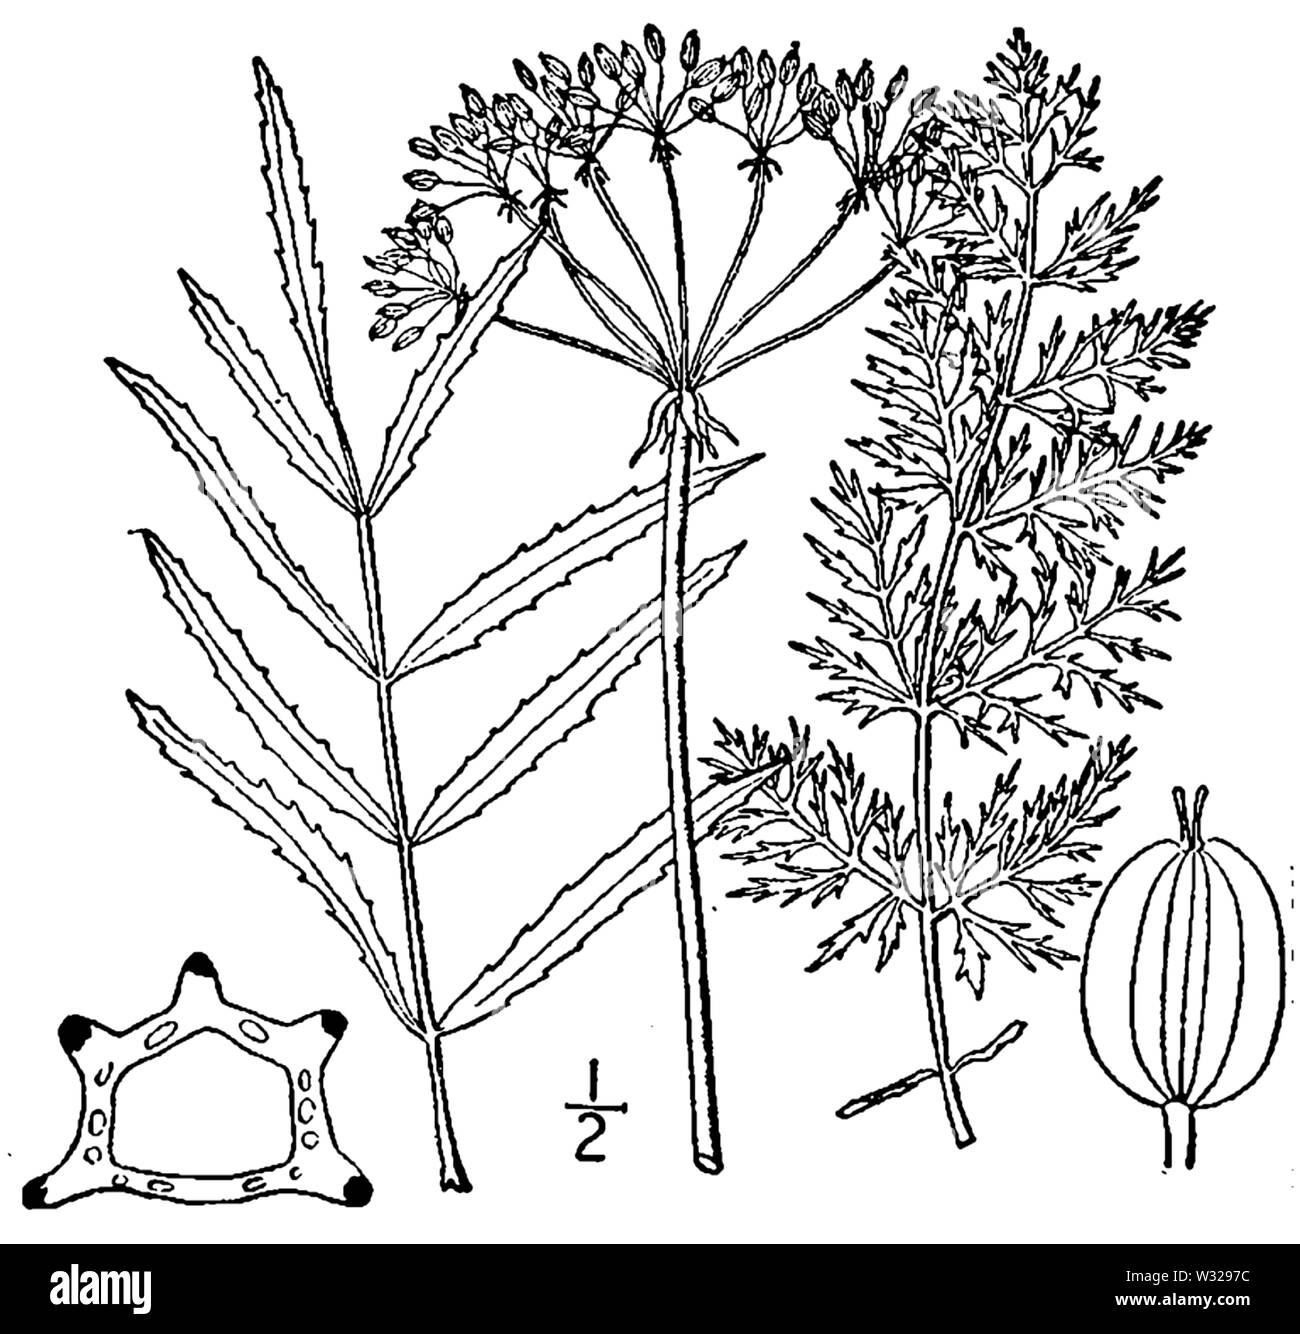 Botanical illustration of Sium suave from 1913. Stock Photo